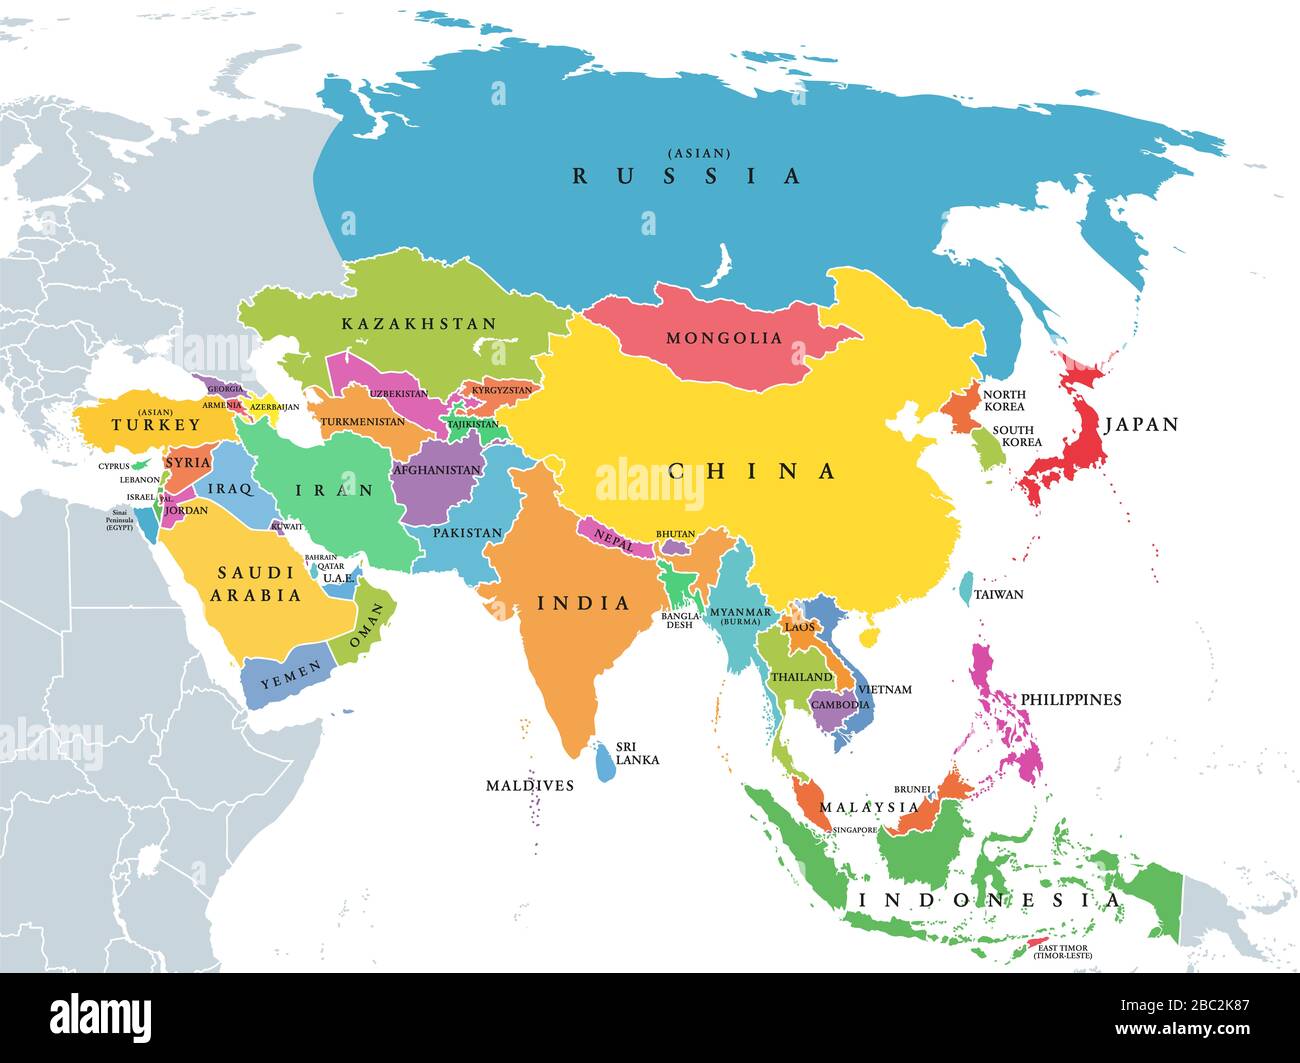 Kontinent Asien, politische Karte mit farbigen Einzelstaaten und Ländern. Mit dem asiatischen Teil Russlands und der Türkei sowie der Sinai-Halbinsel als afrikanischer Teil. Stockfoto